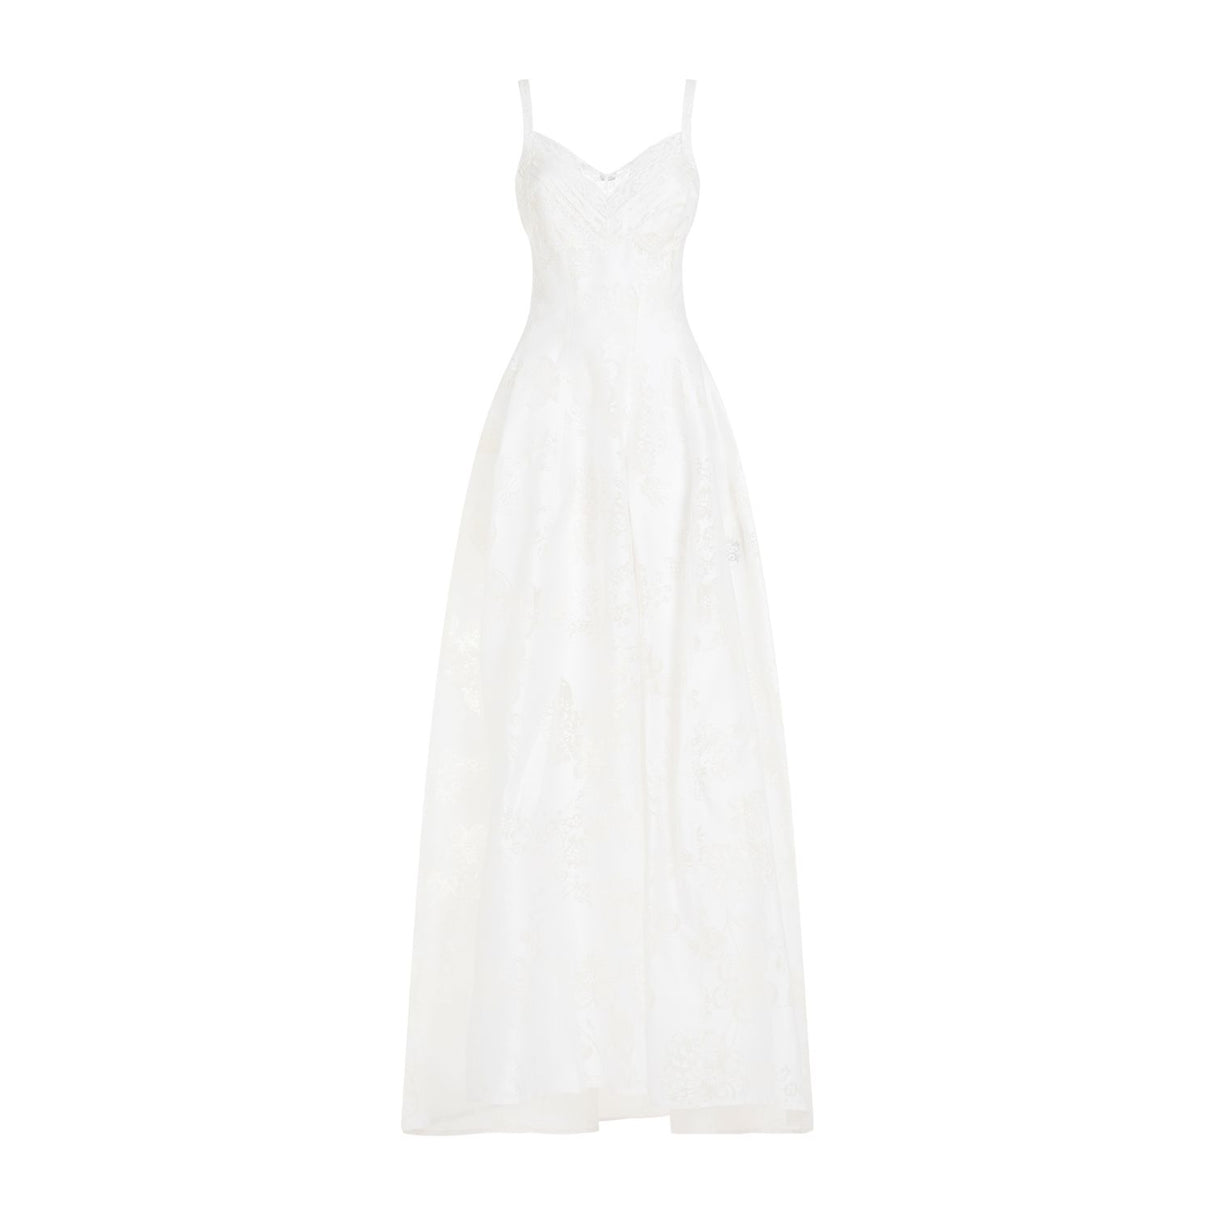 令人惊艳的白色夏季连衣裙